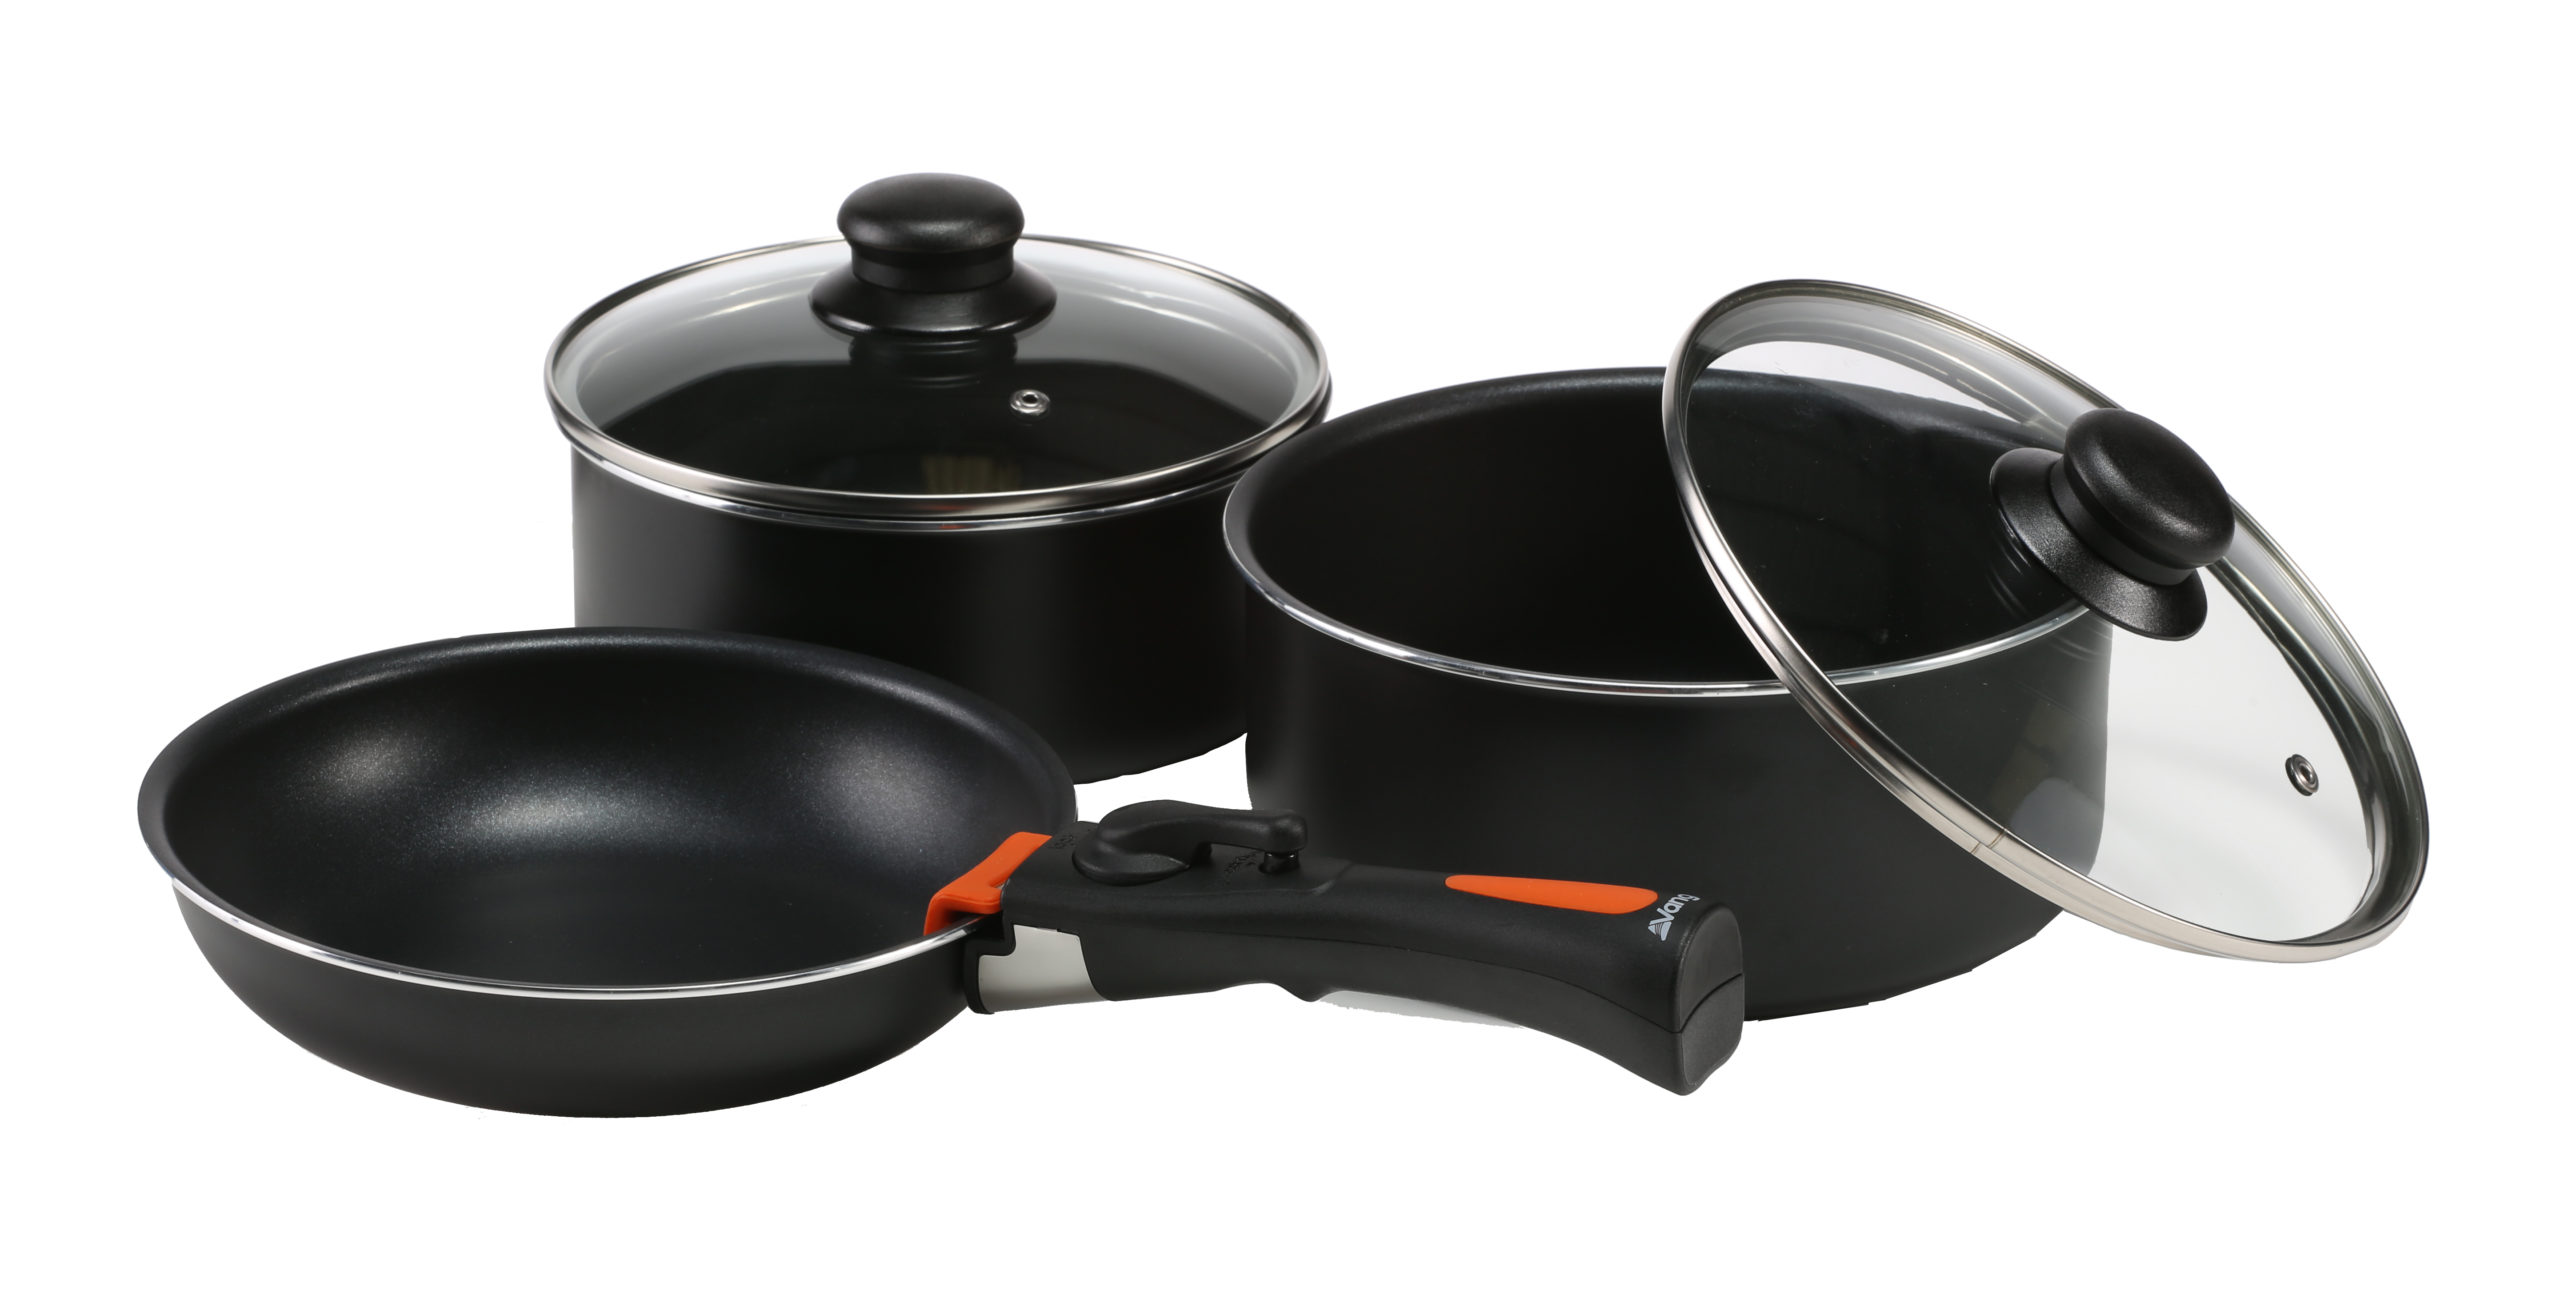 https://www.caravanguard.co.uk/news/wp-content/uploads/2020/10/2020-Vango-Product-essentials-cookware-gourmet-cook-set-1-HI-scaled.jpg